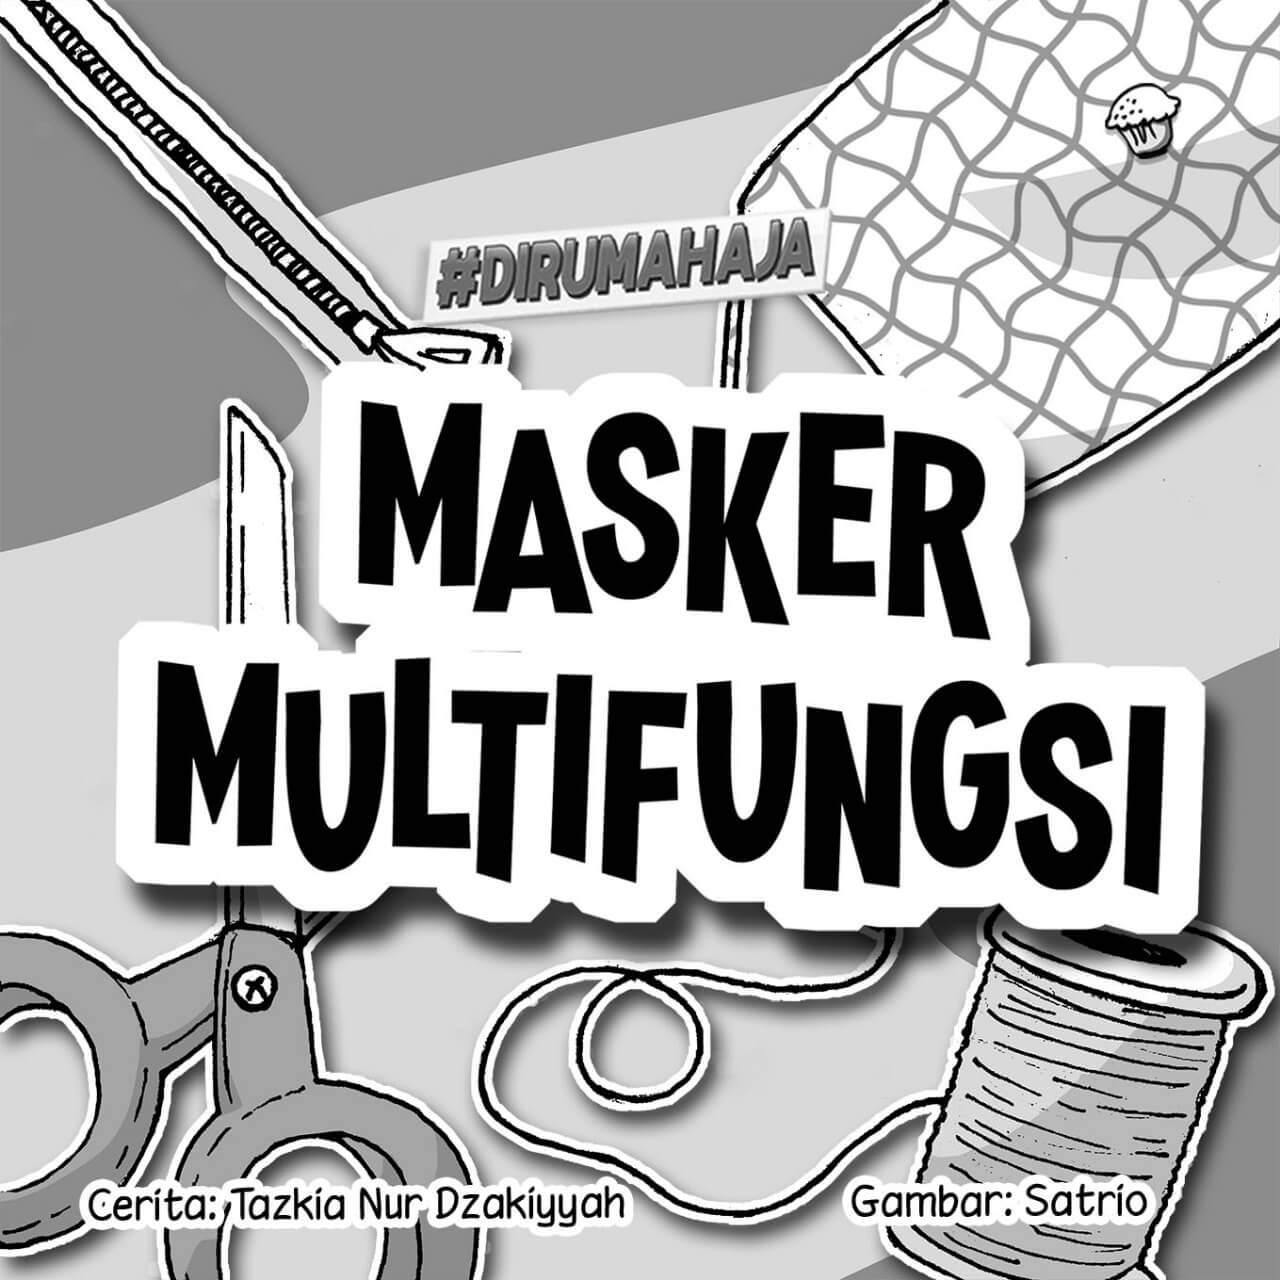 Masker Multifungsi cover bw